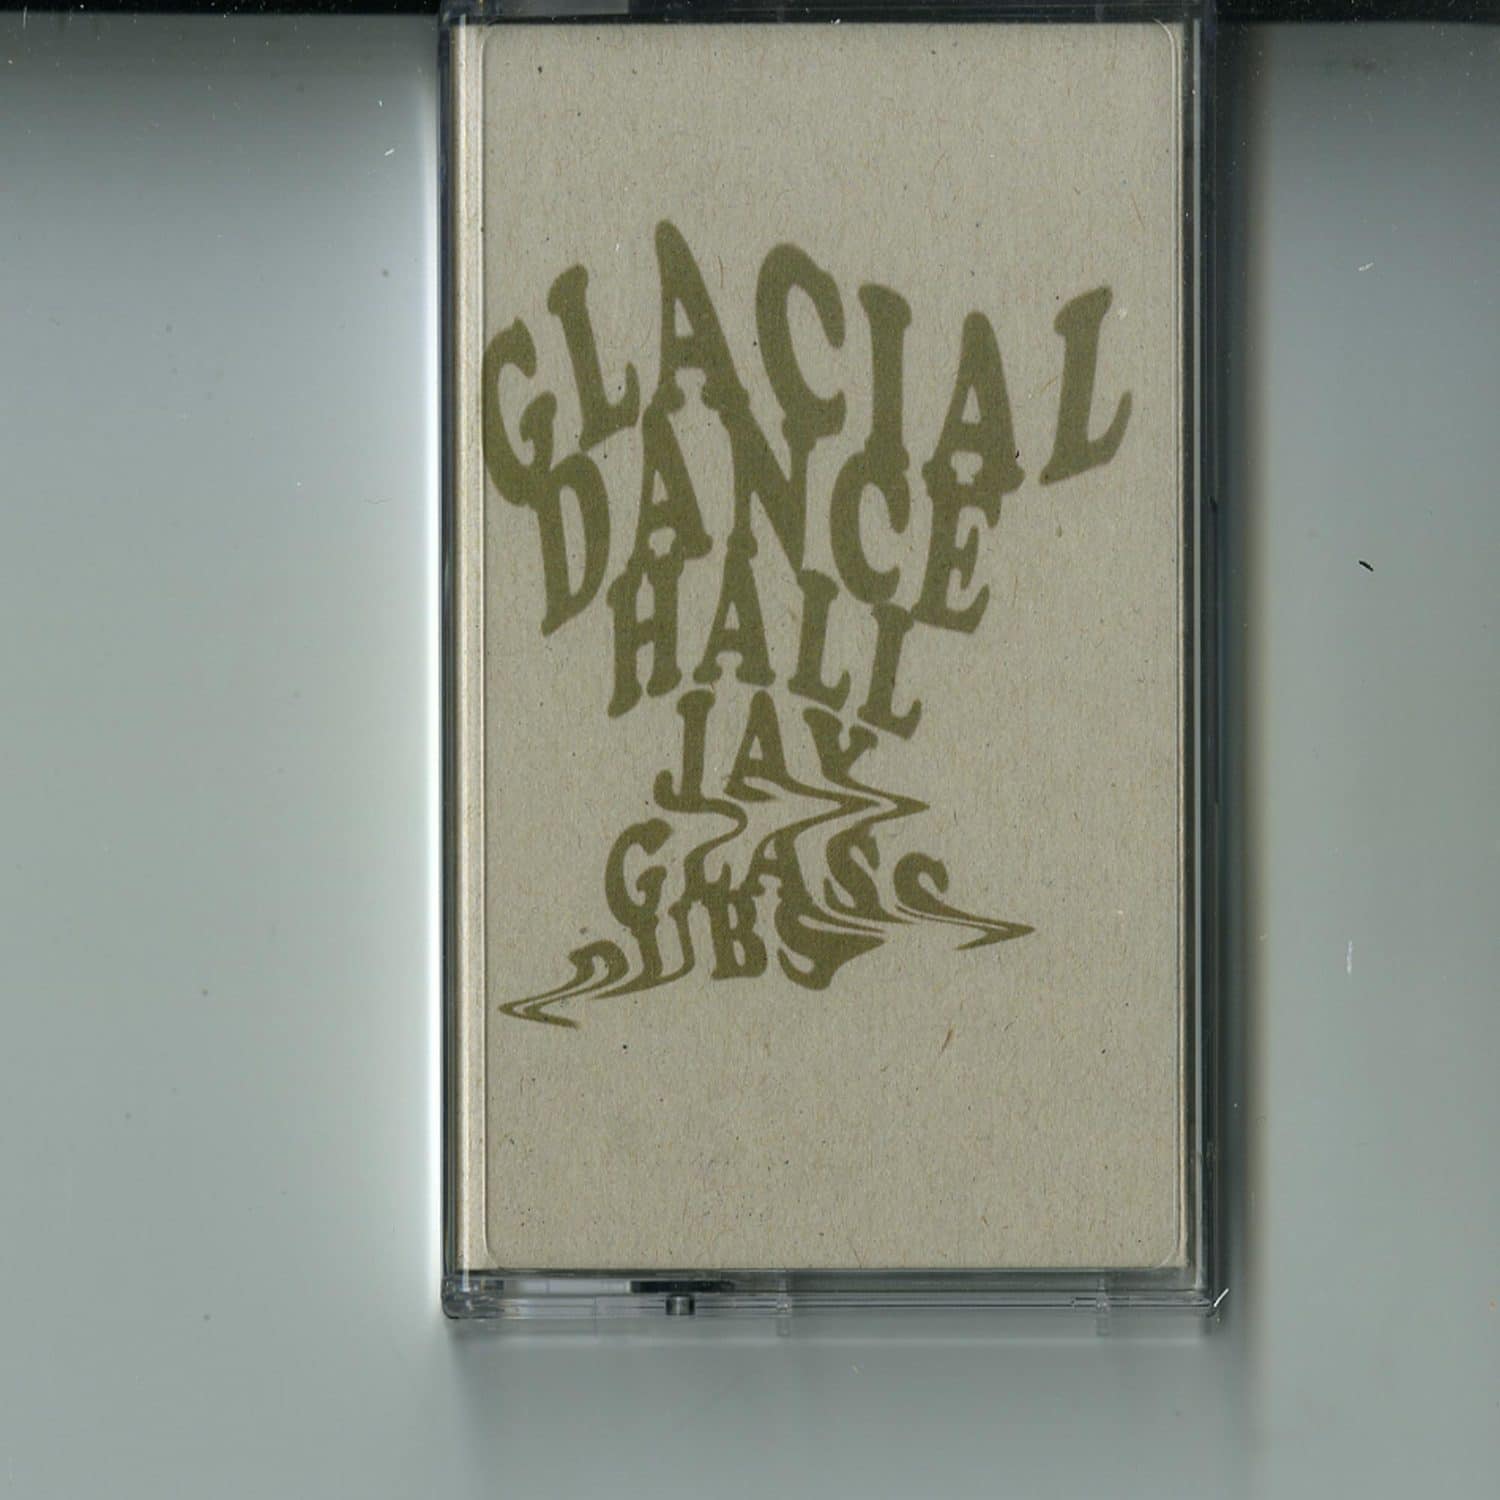 Jay Glass Dubs - GLACIAL DANCEHALL 